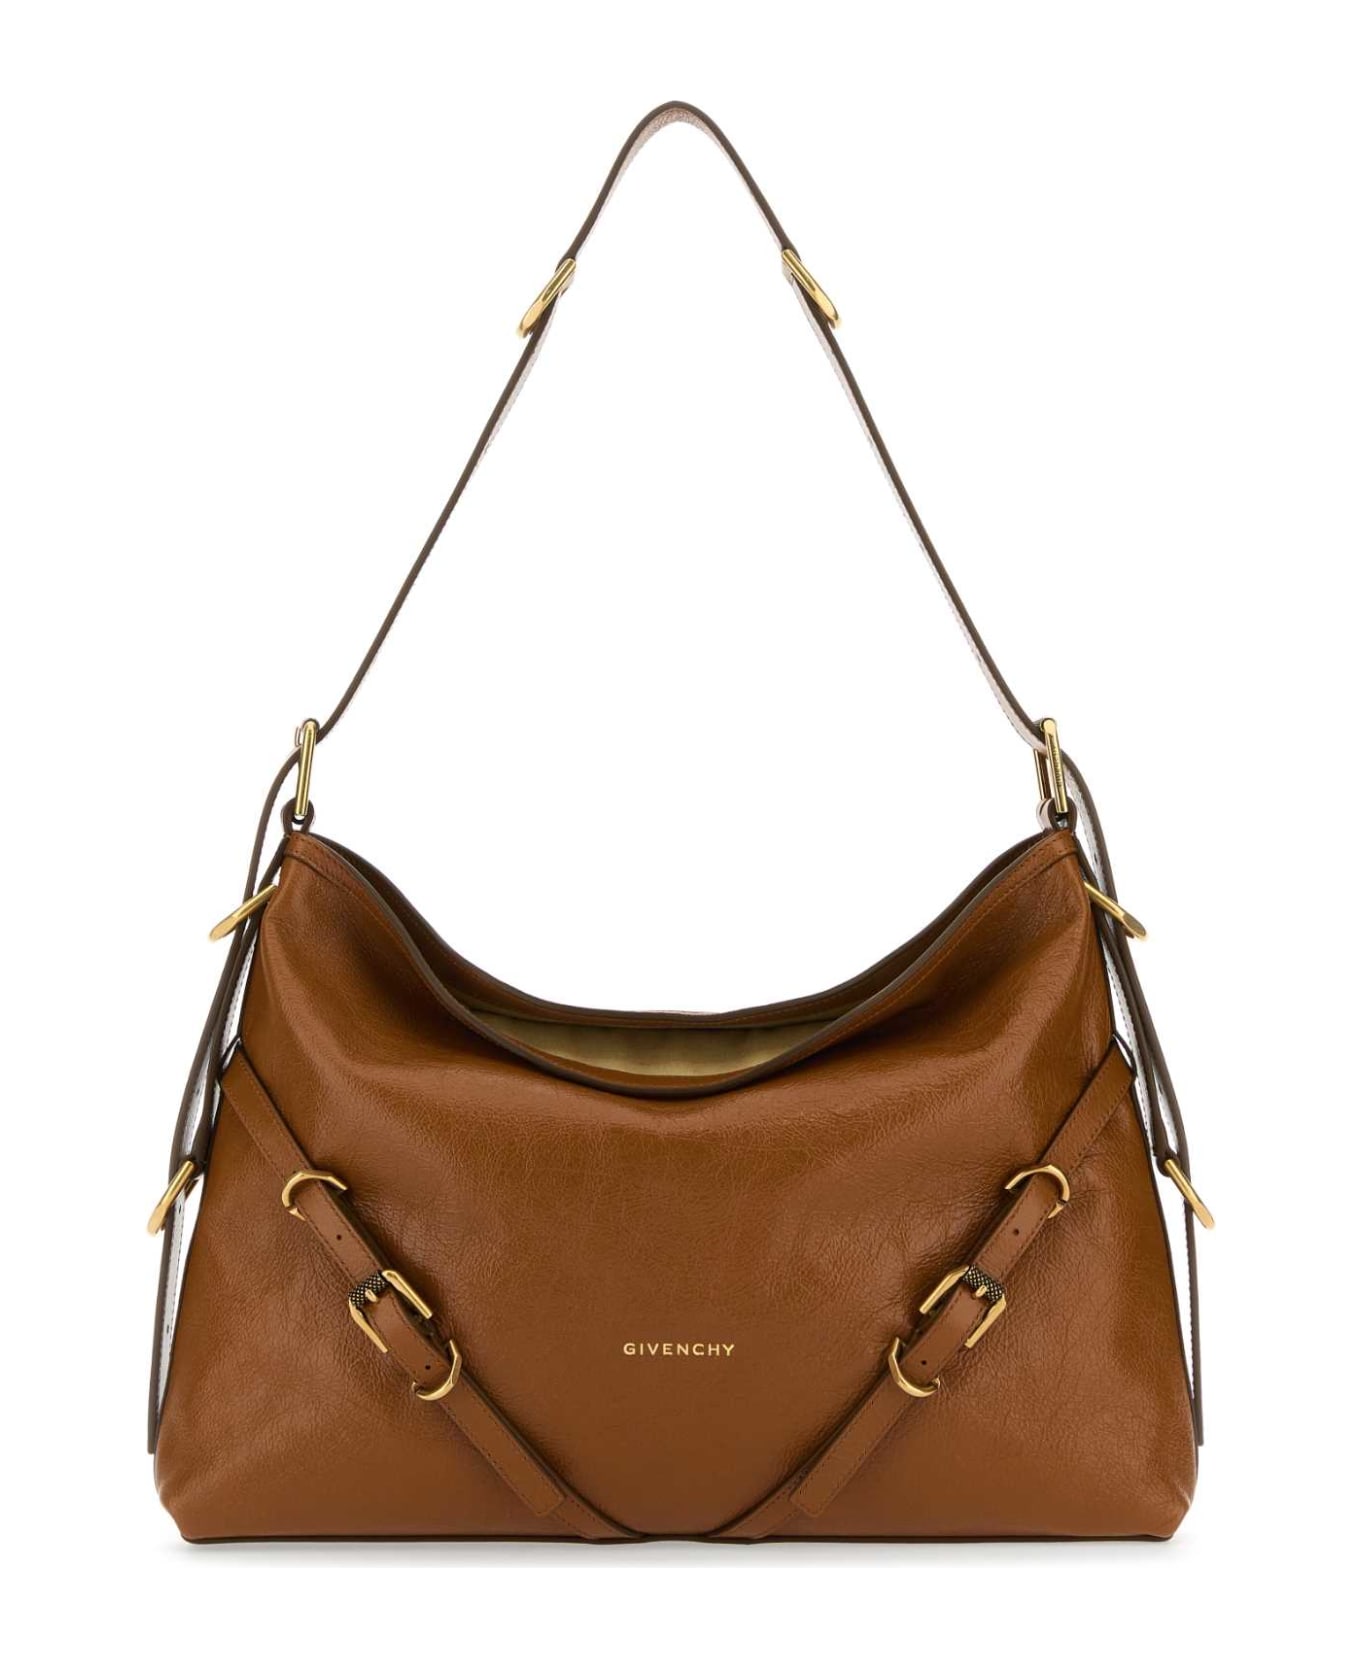 Givenchy Caramel Leather Medium Voyou Shoulder Bag - SOFTTAN